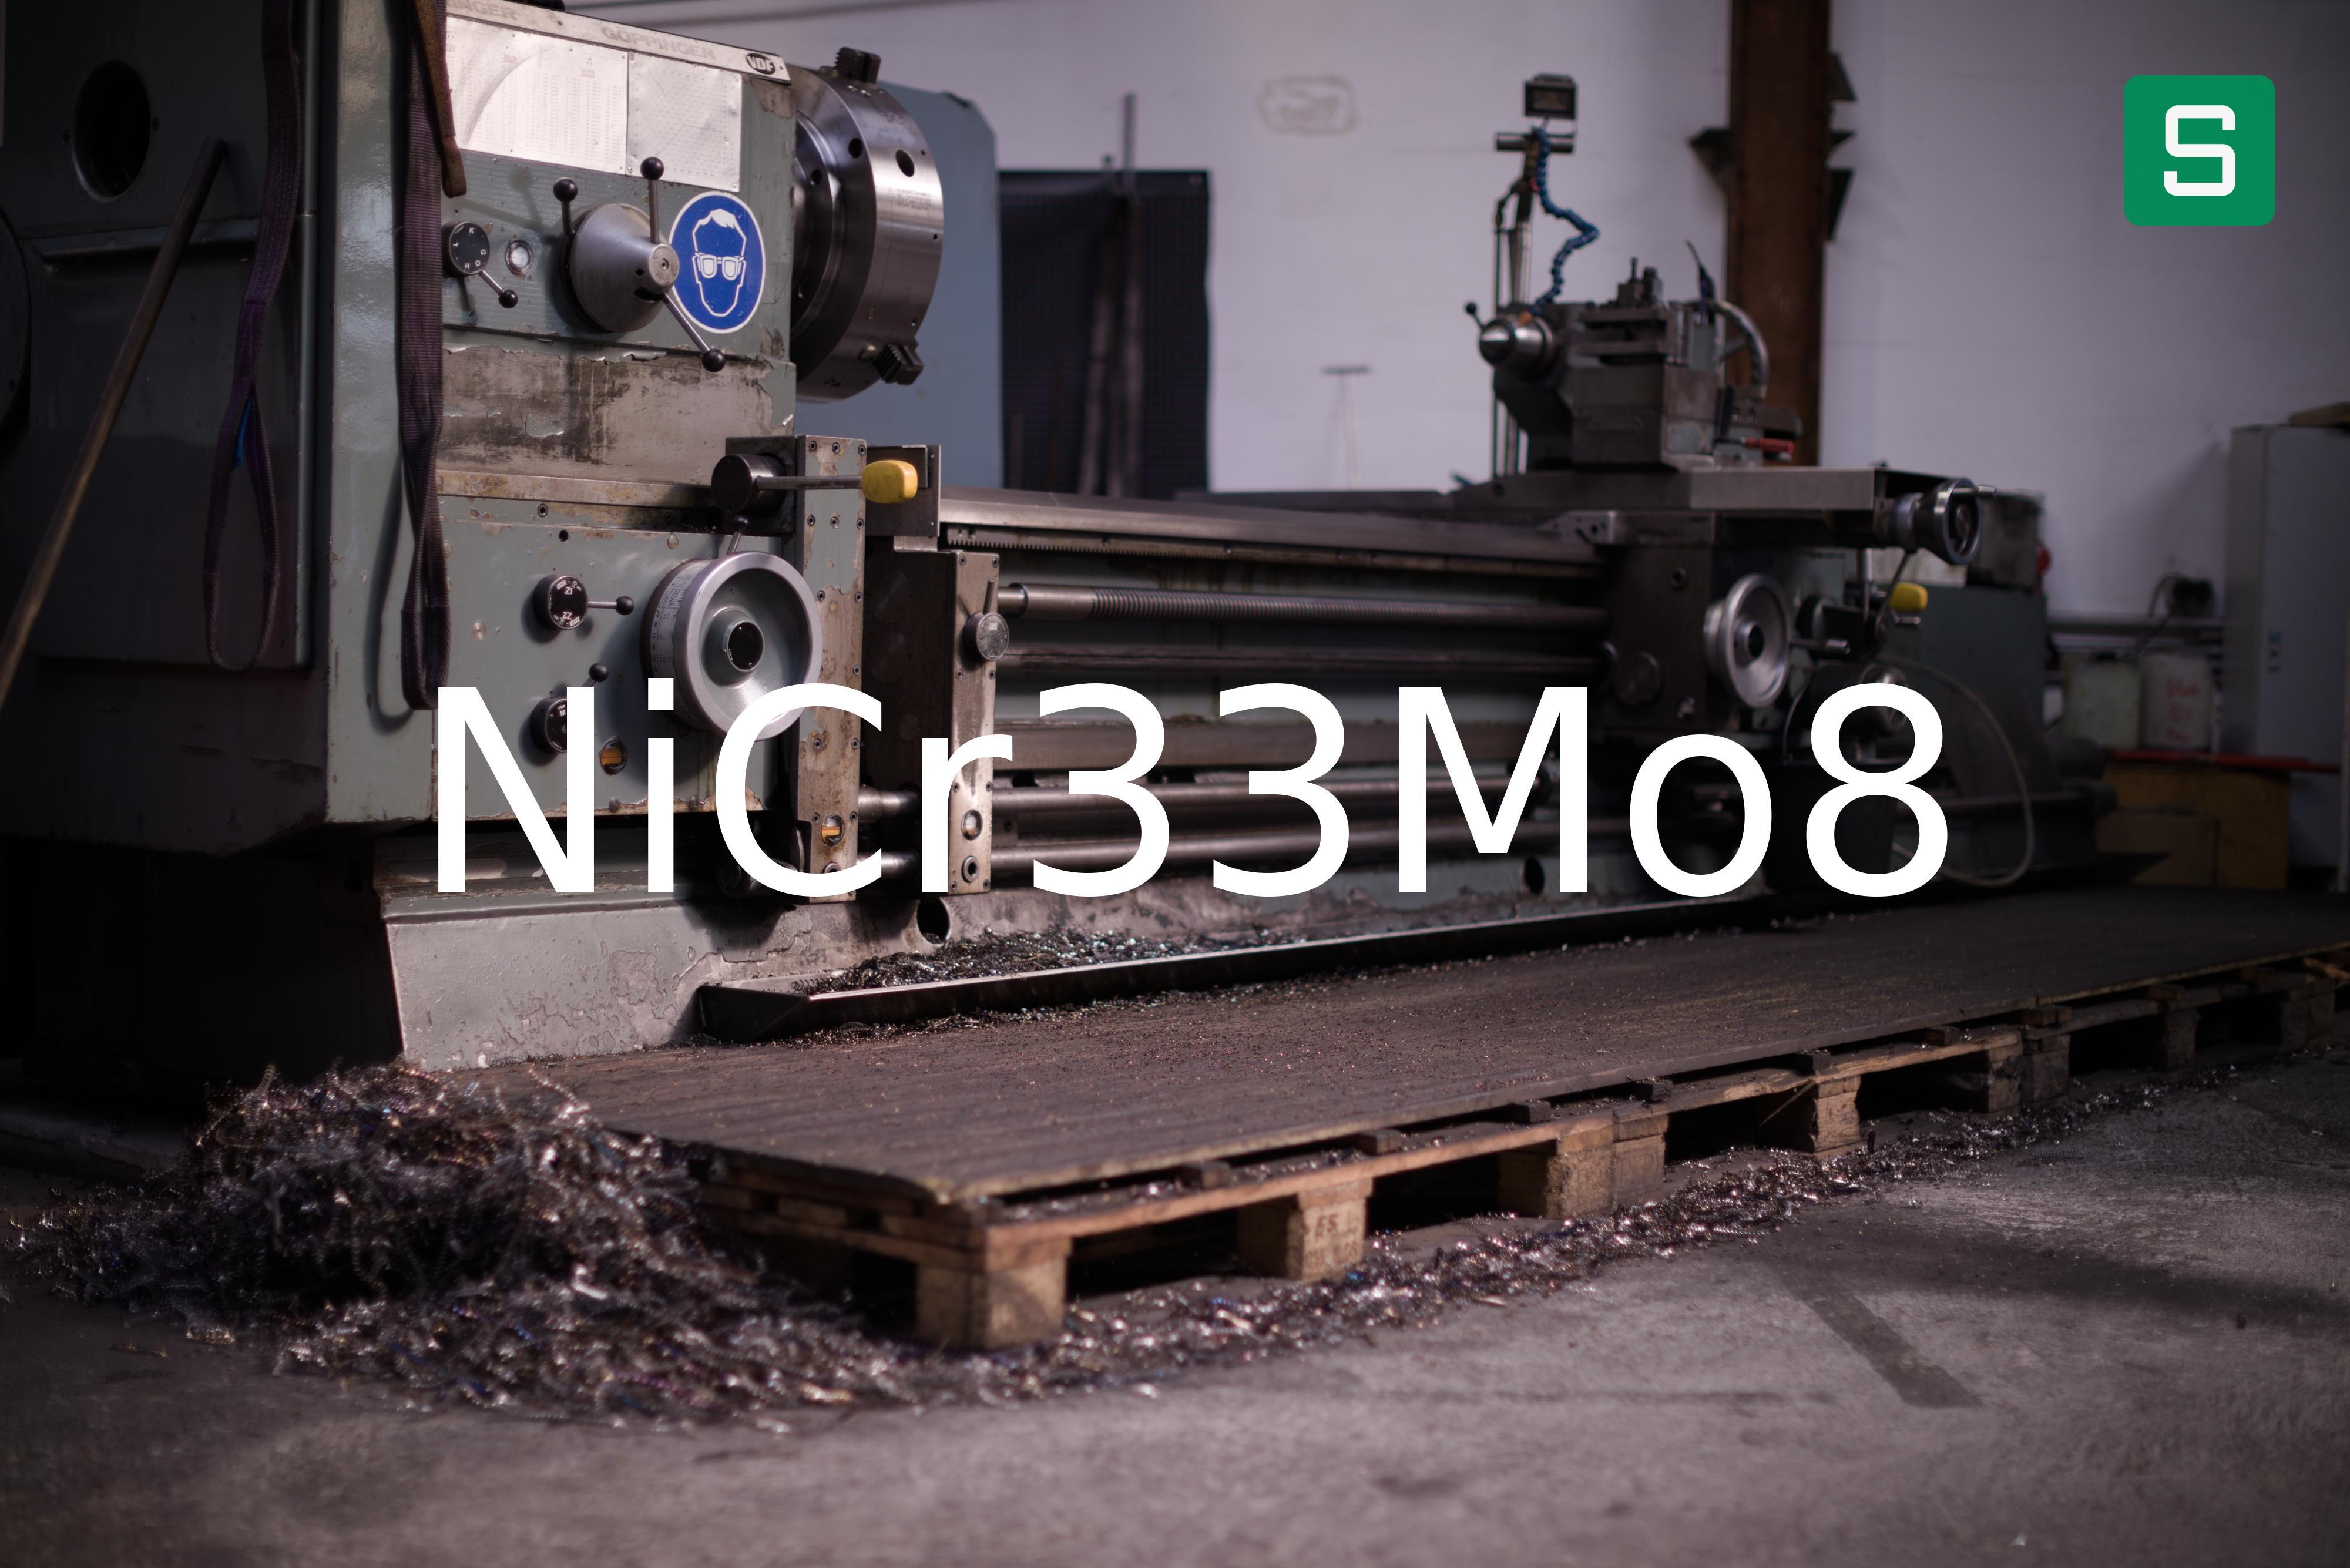 Steel Material: NiCr33Mo8